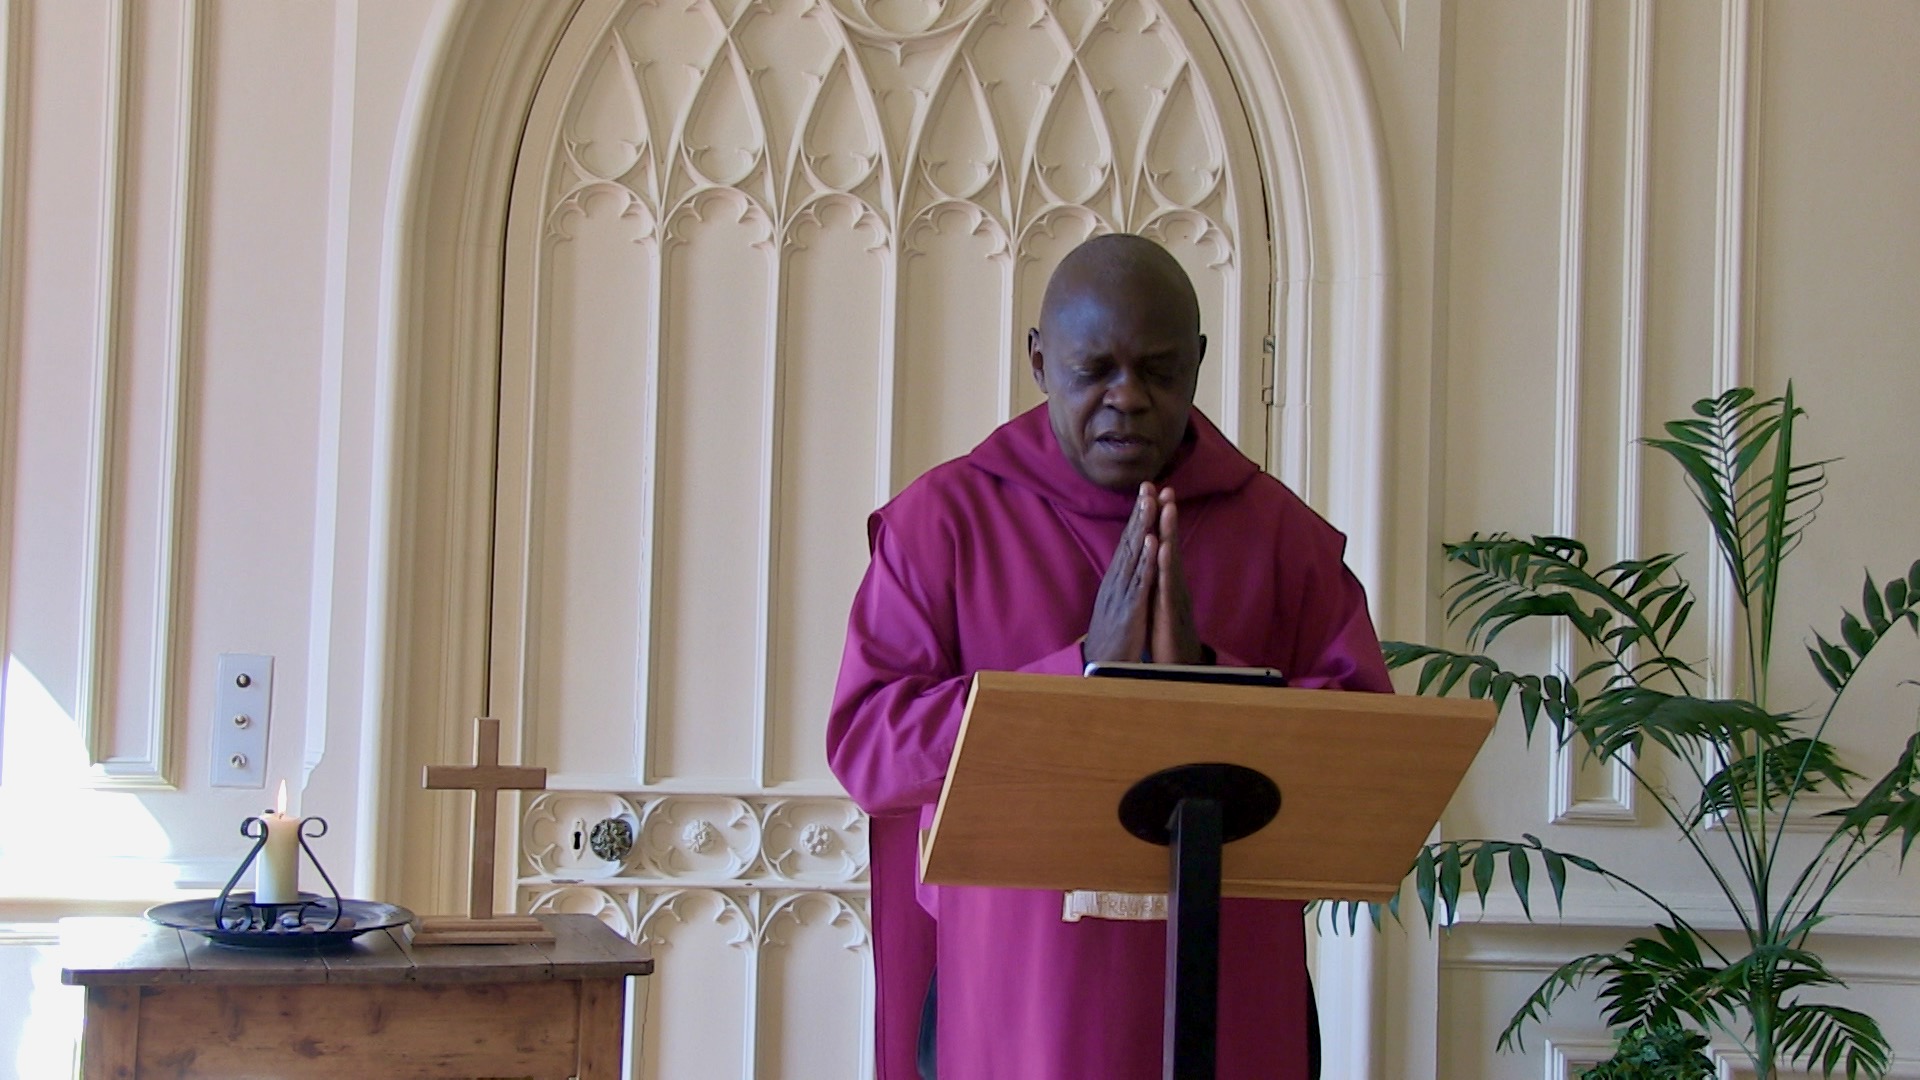 The Archbishop of York praying during a service at Bishopthorpe.